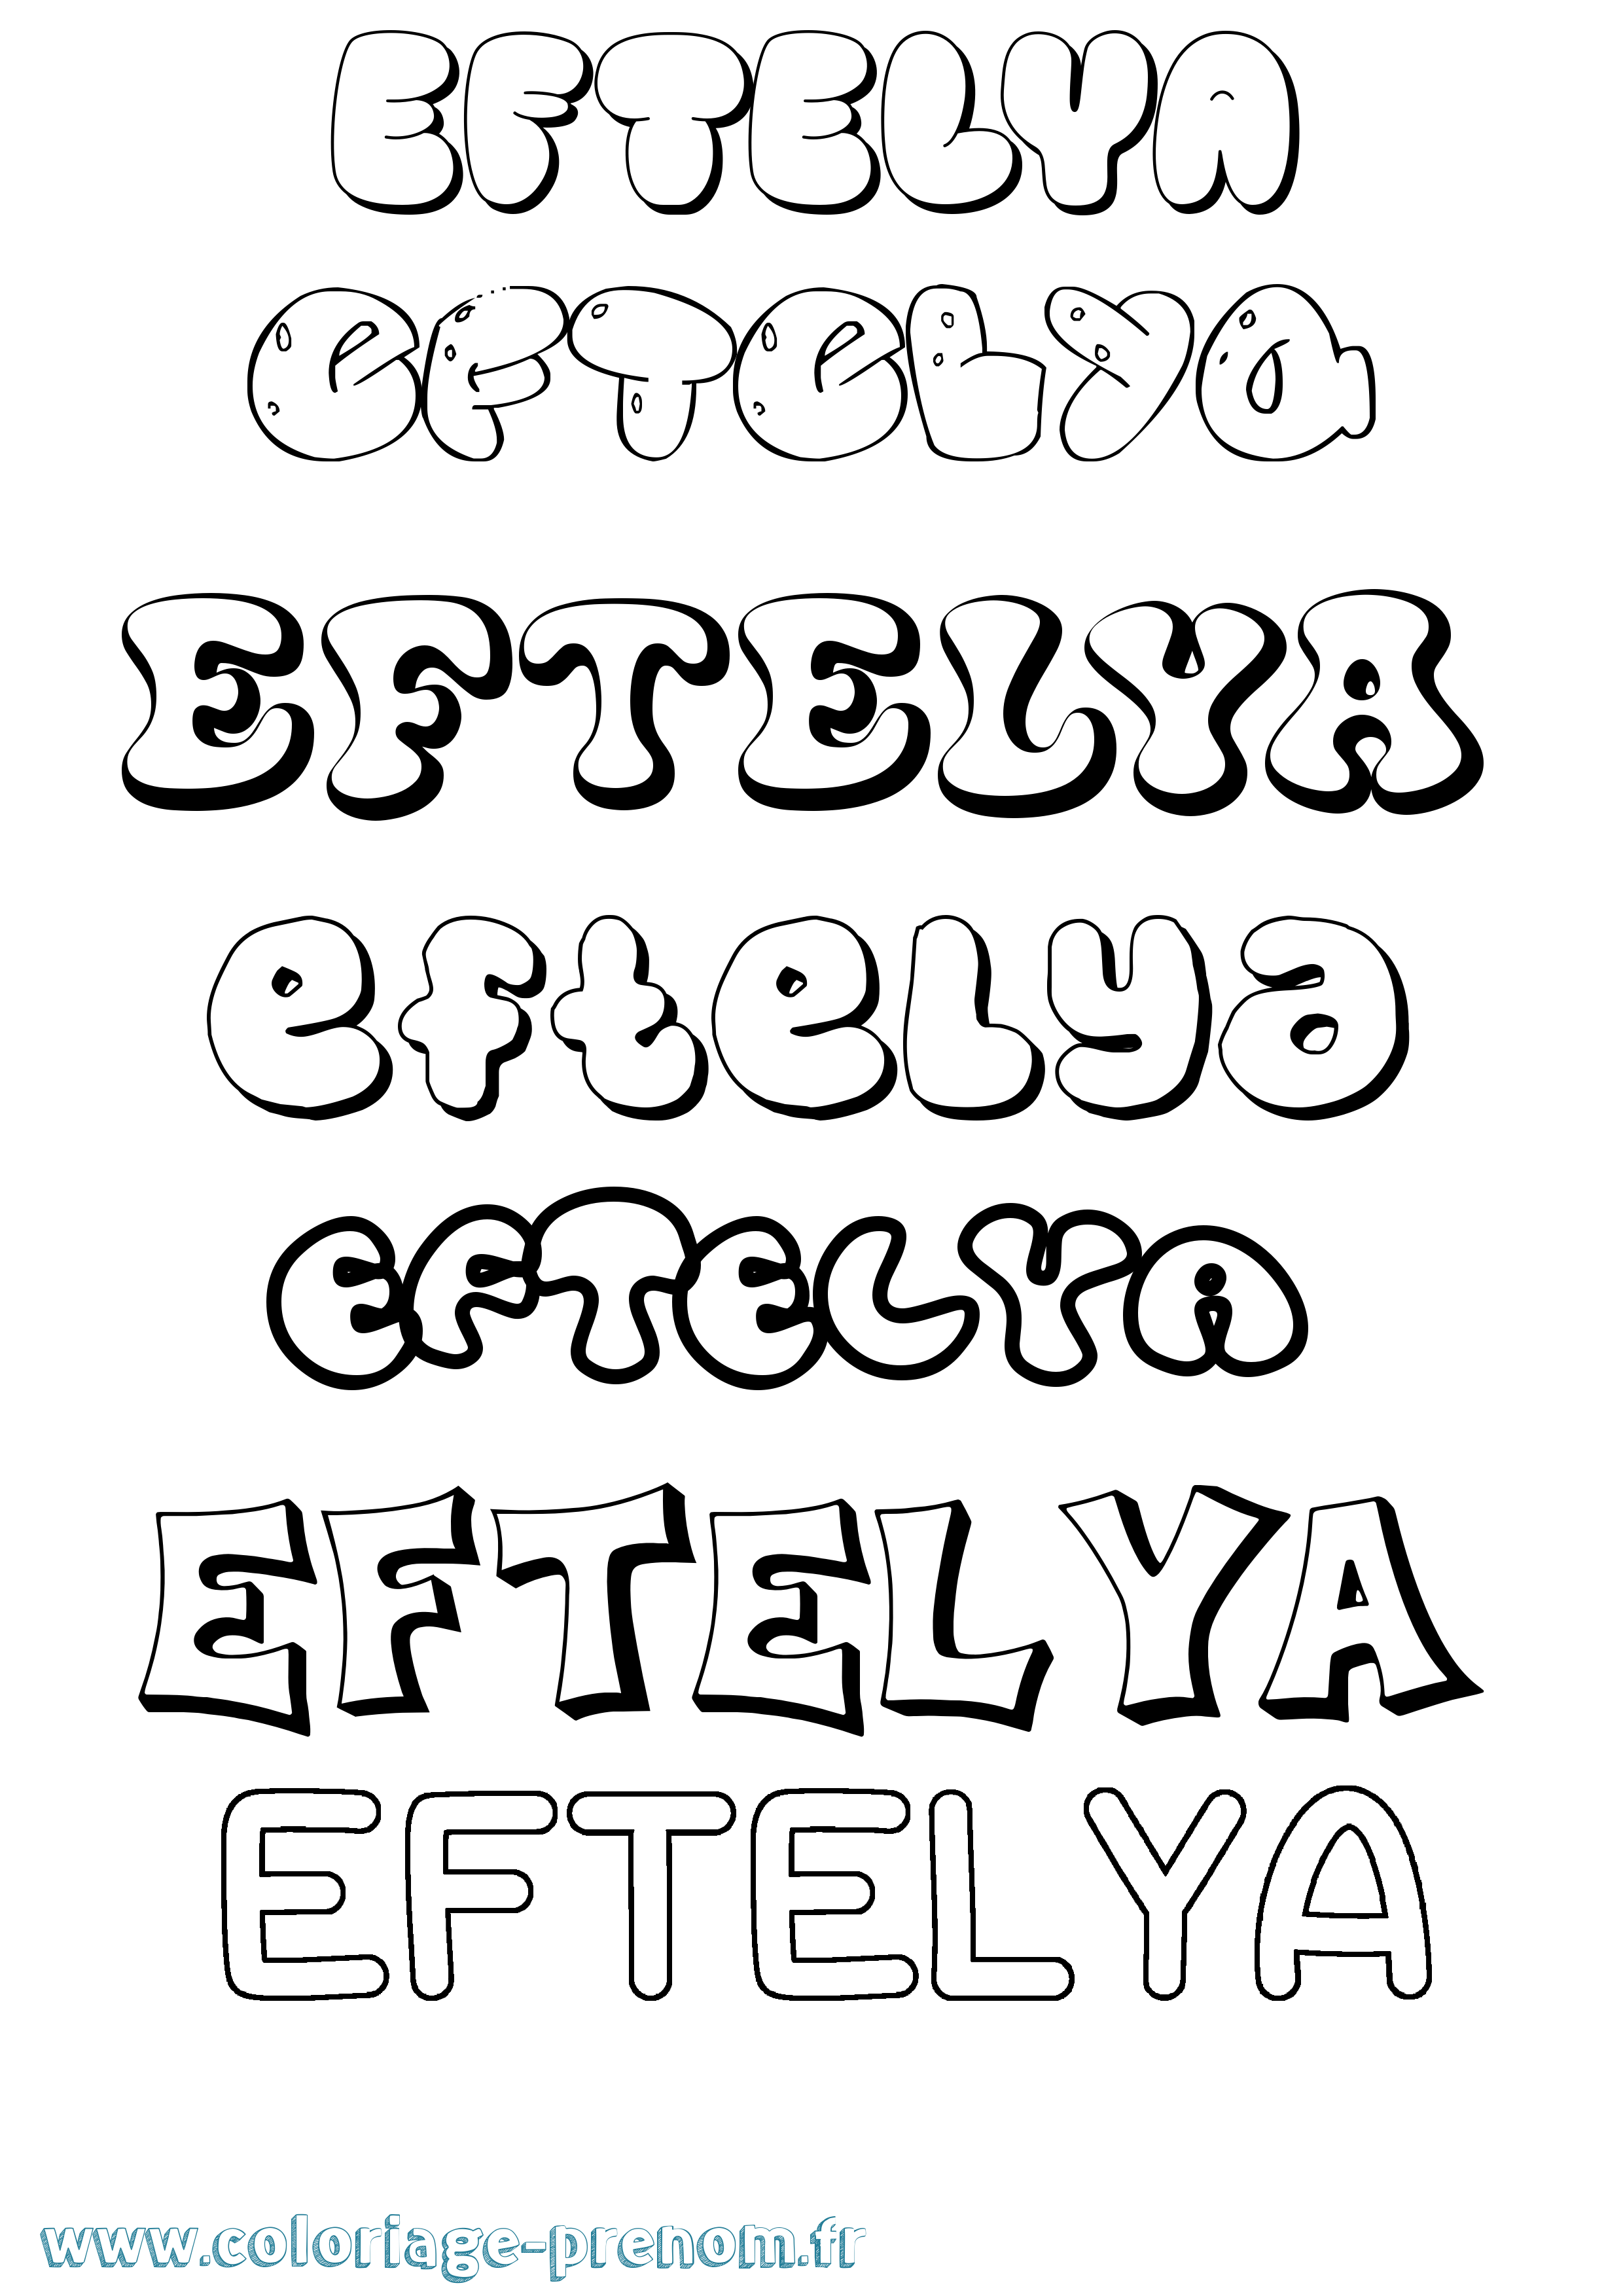 Coloriage prénom Eftelya Bubble